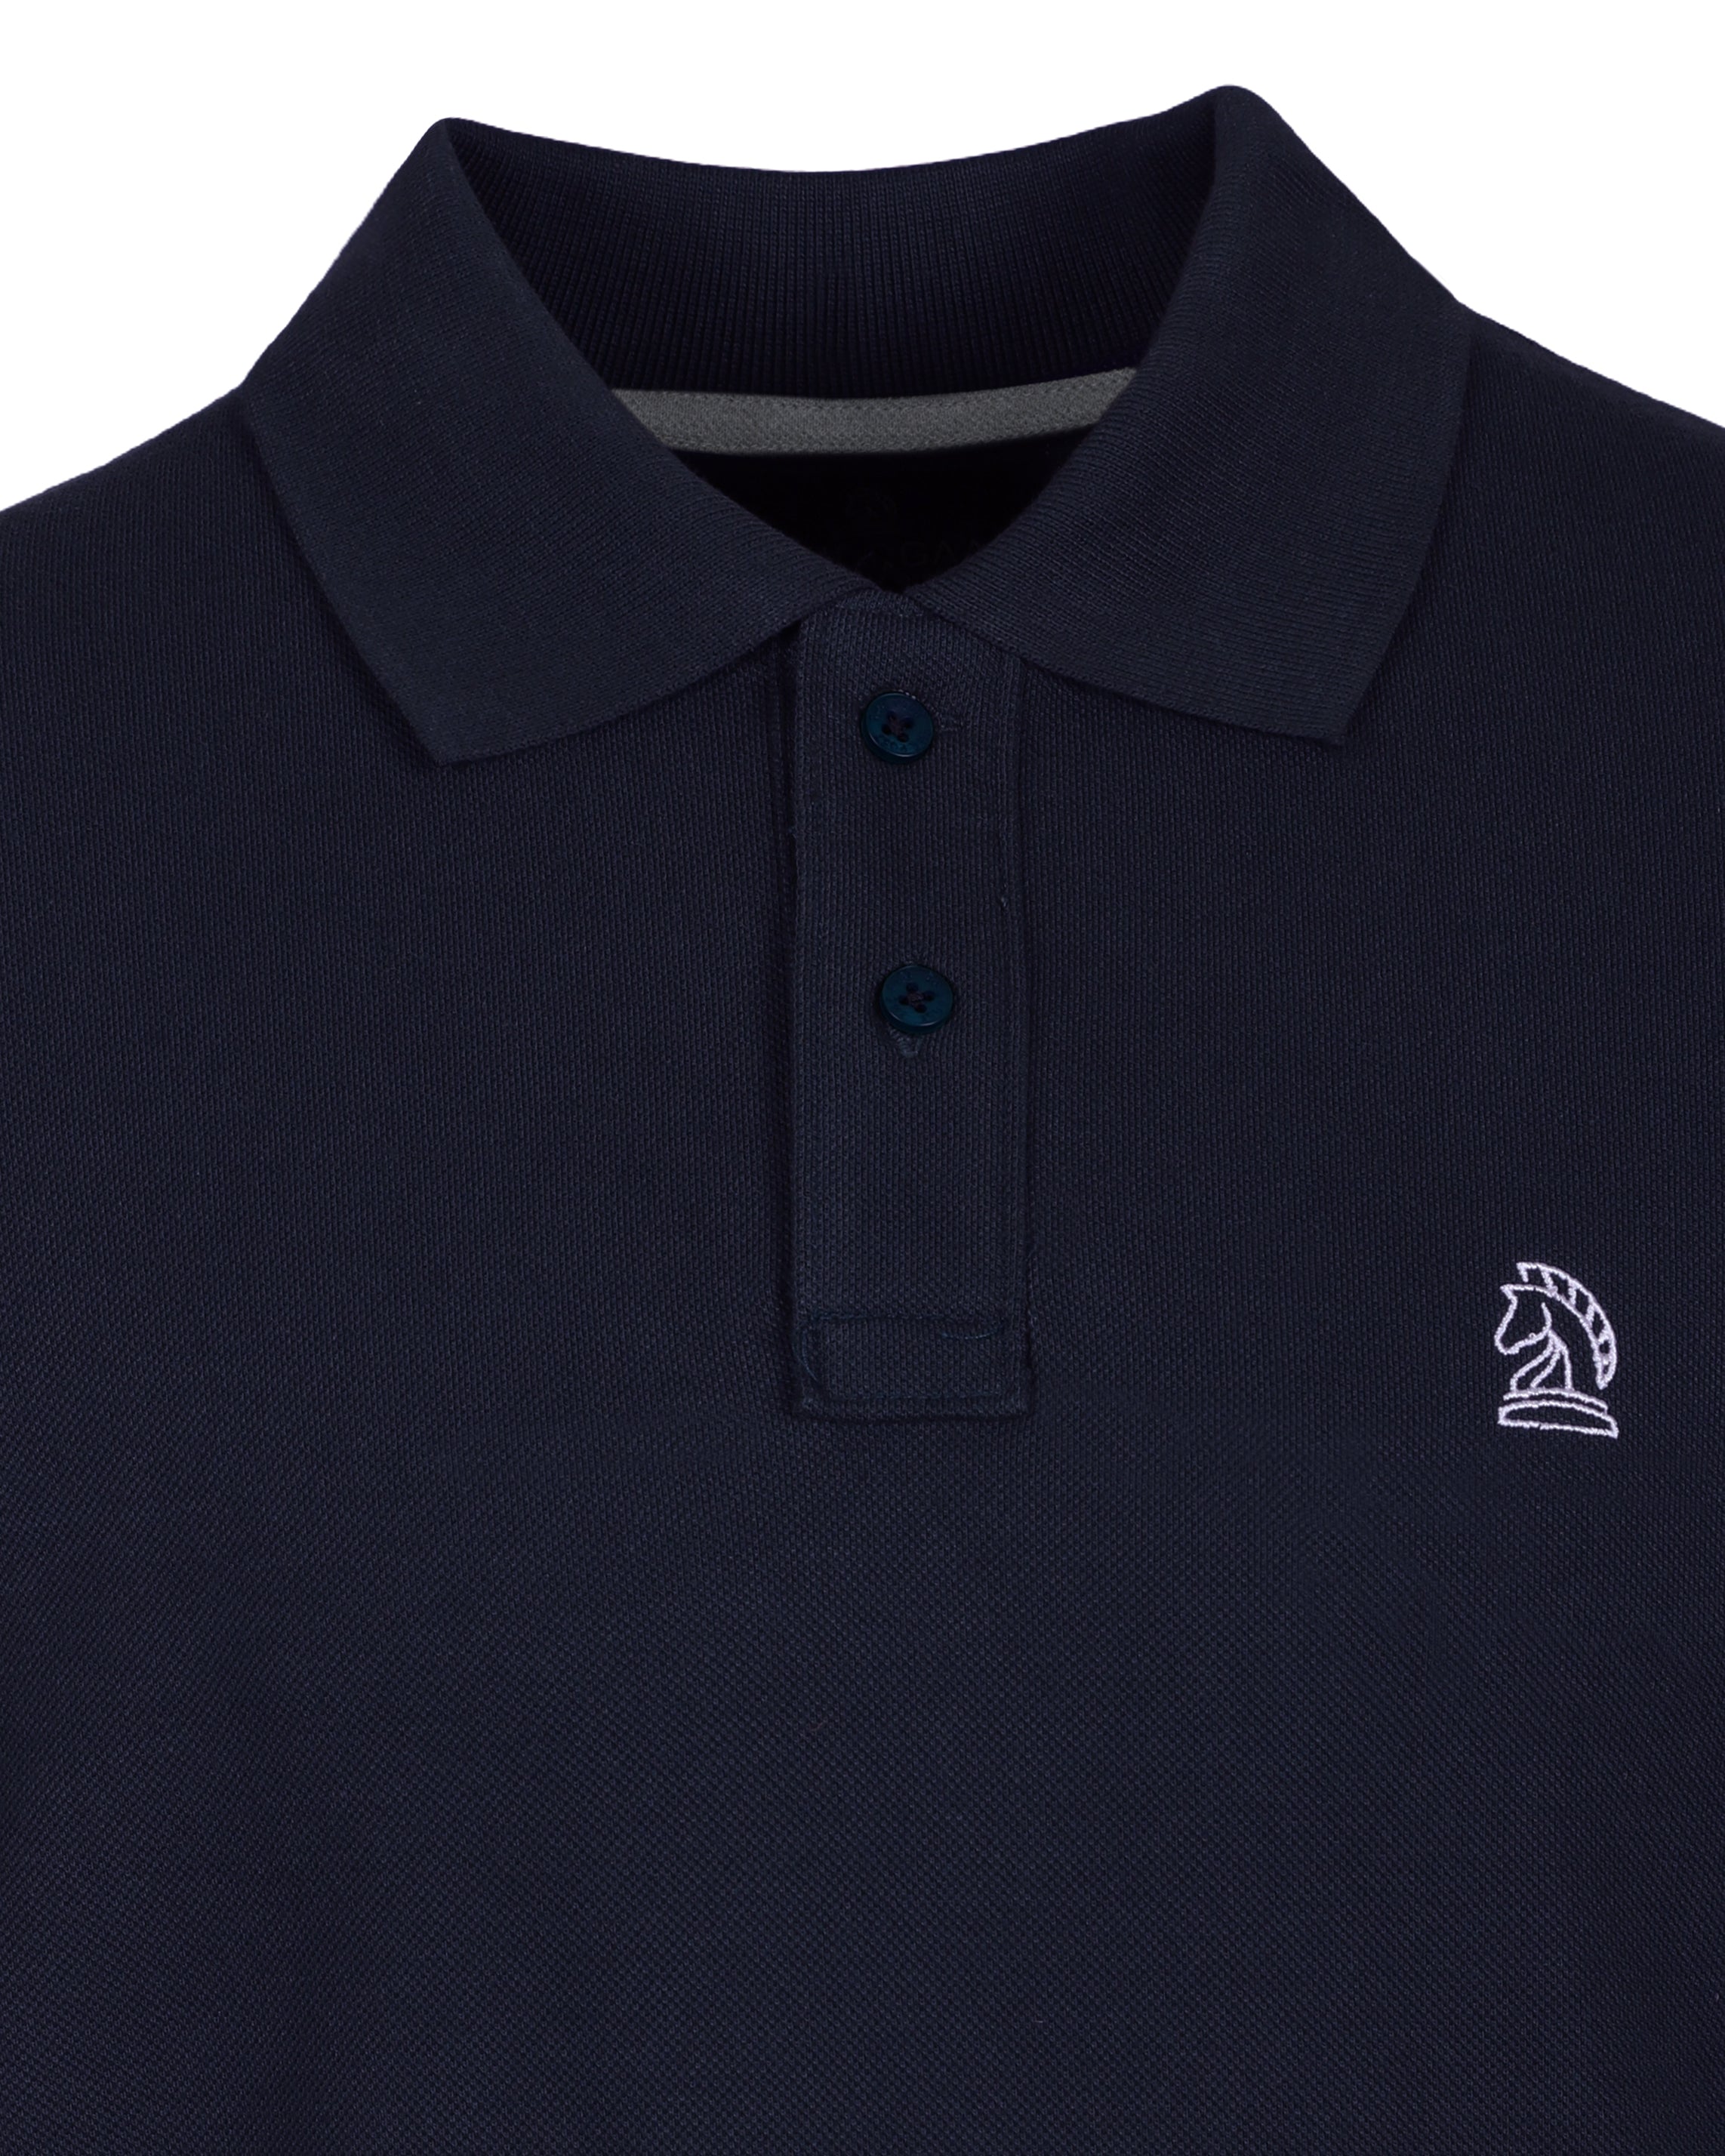 Navy Blue Color Premium Cotton T-Shirt